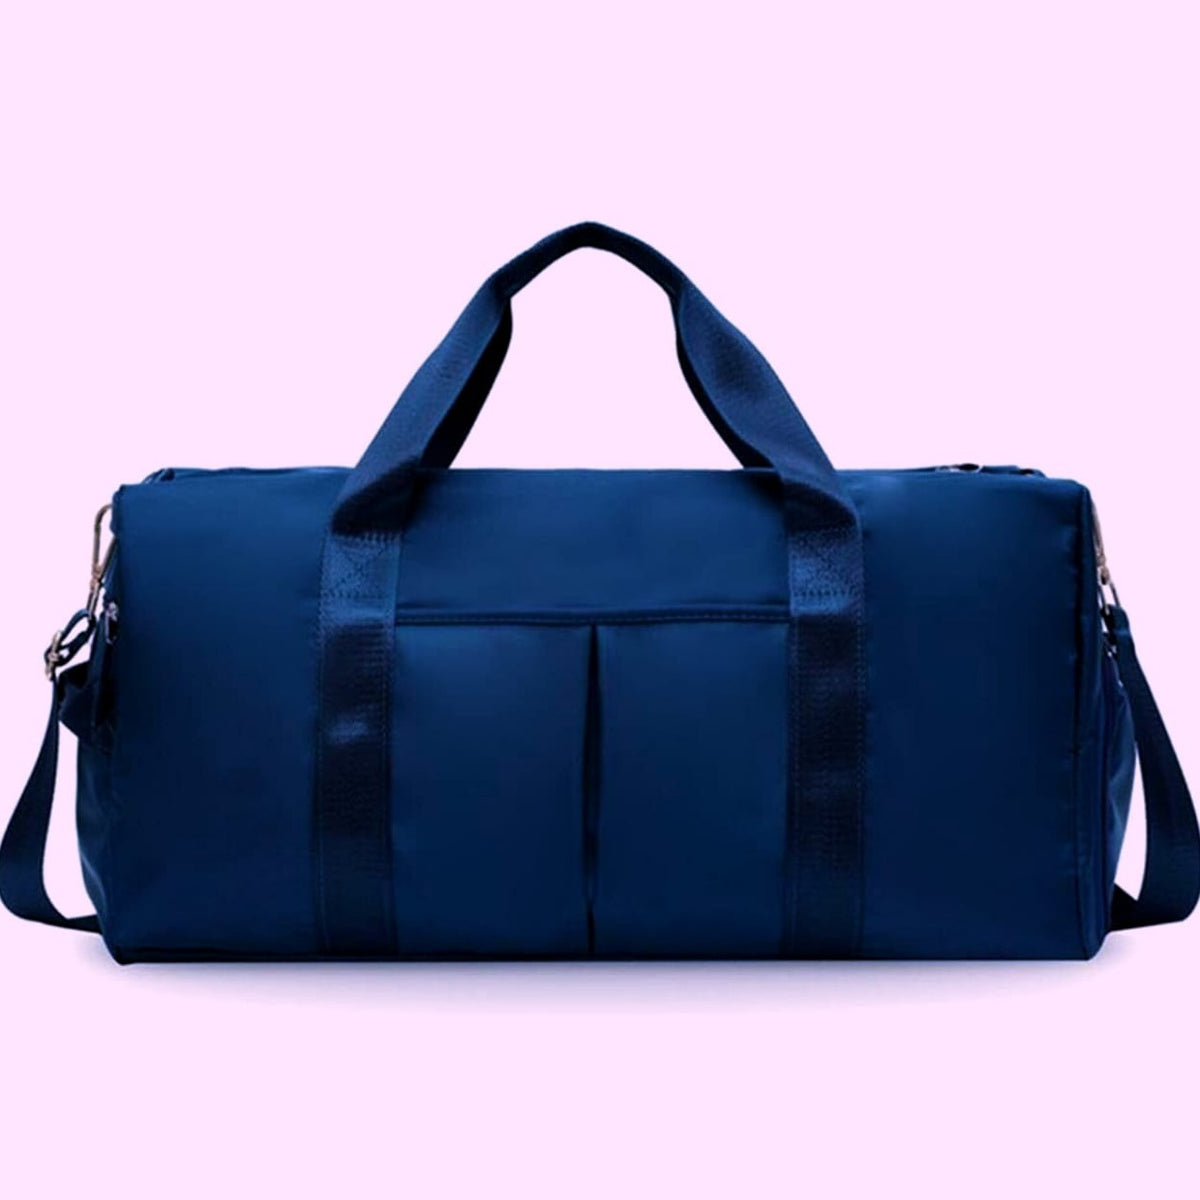 Denim Navy - Traveler Luggage Bag